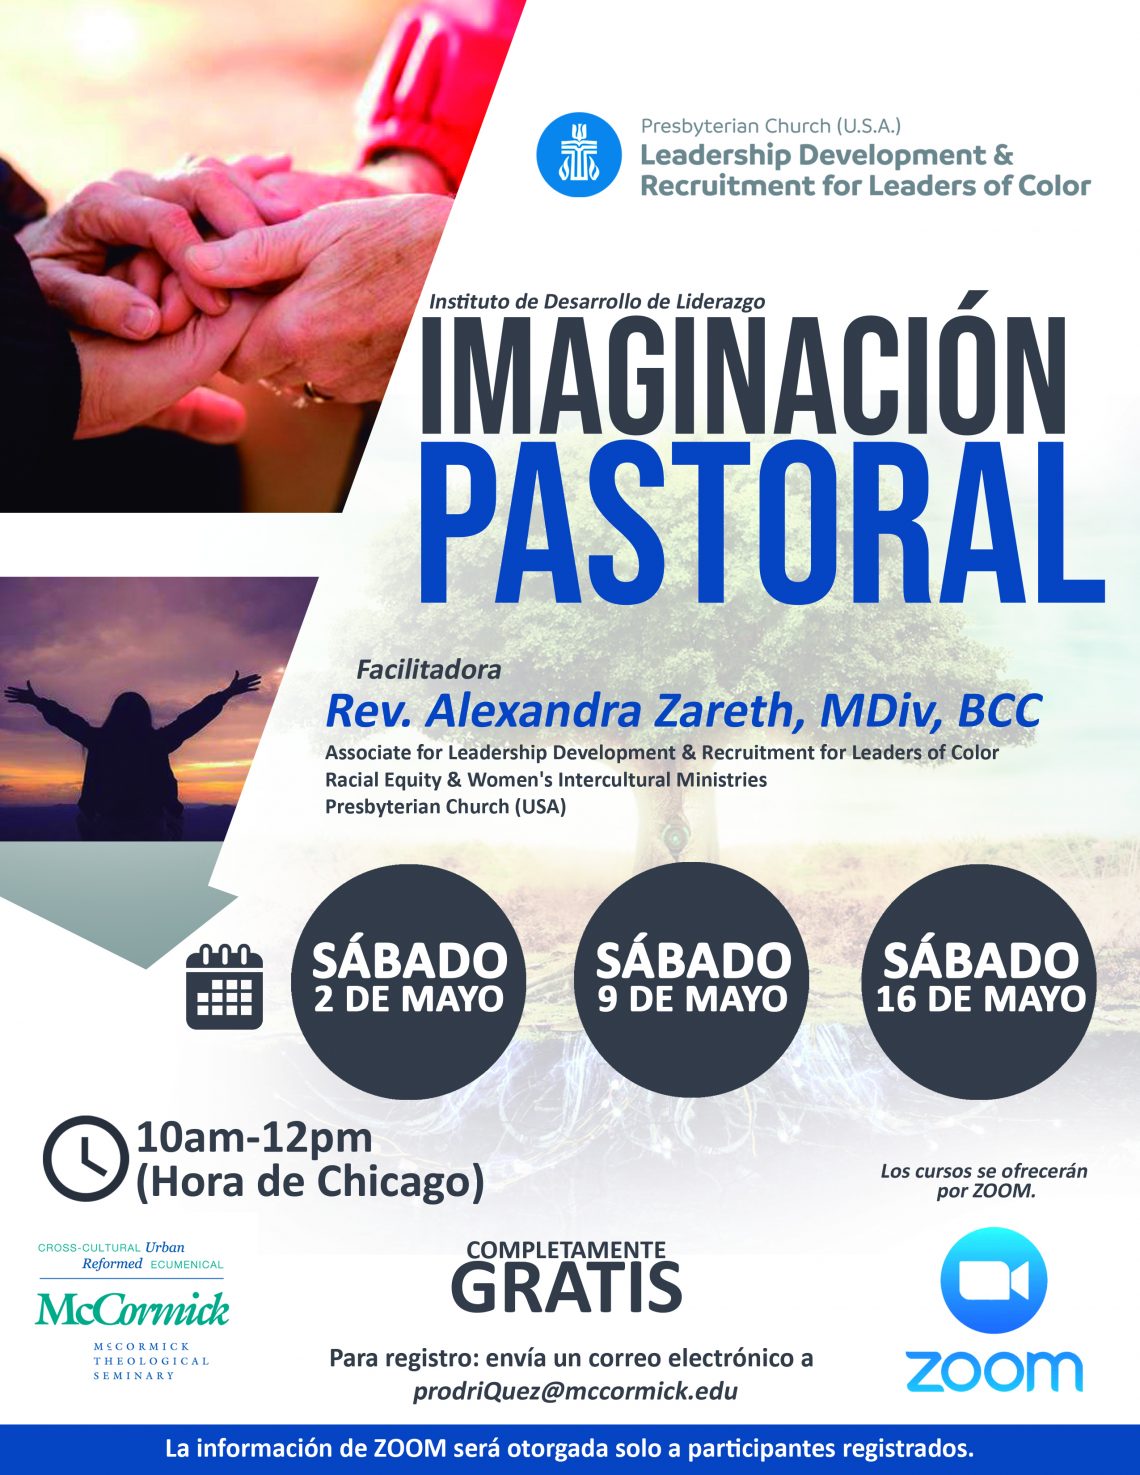 Discernment Program for Spanish Speaking Faith Leaders